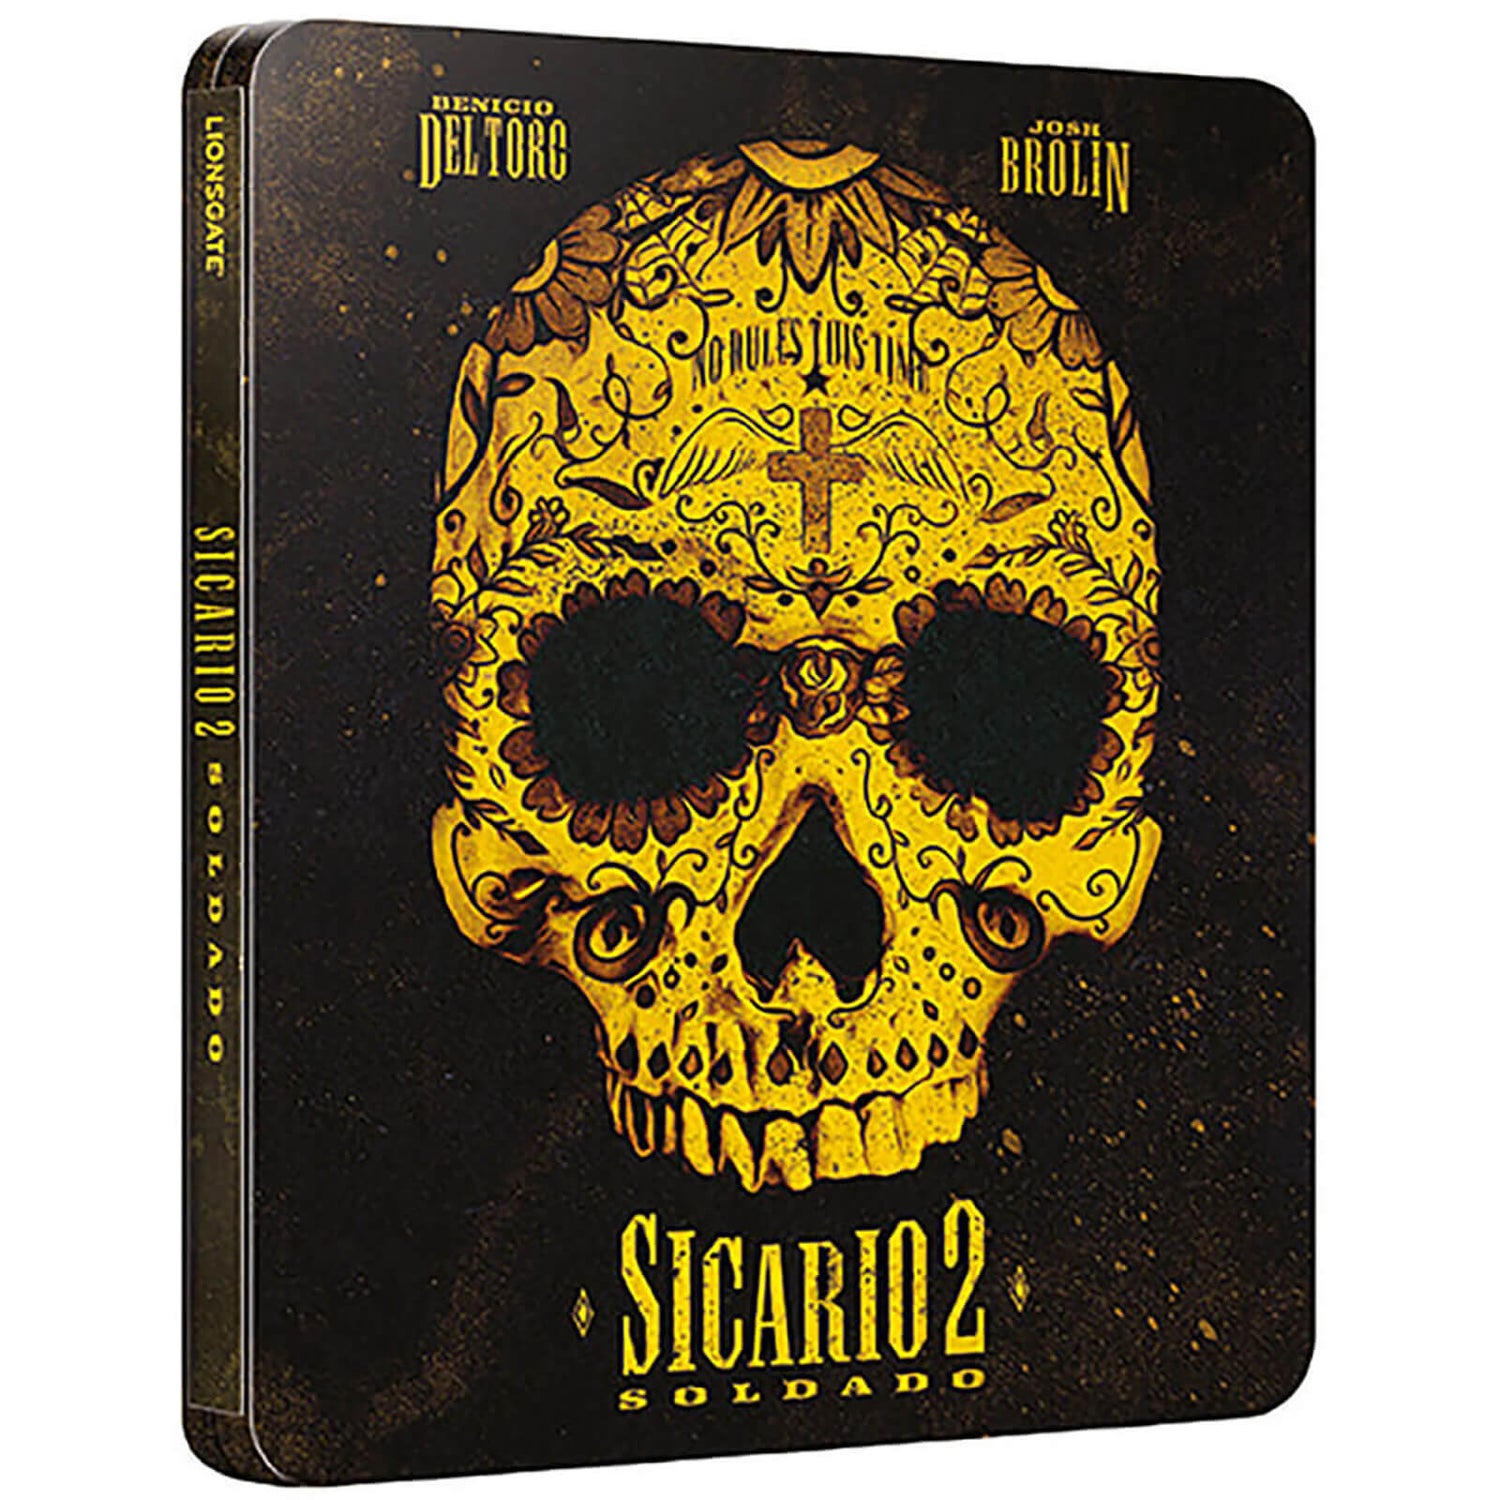 Sicario 2: Soldado 4K Ultra HD (inclusief Blu-Ray versie) - Zavvi exclusief Steelbook